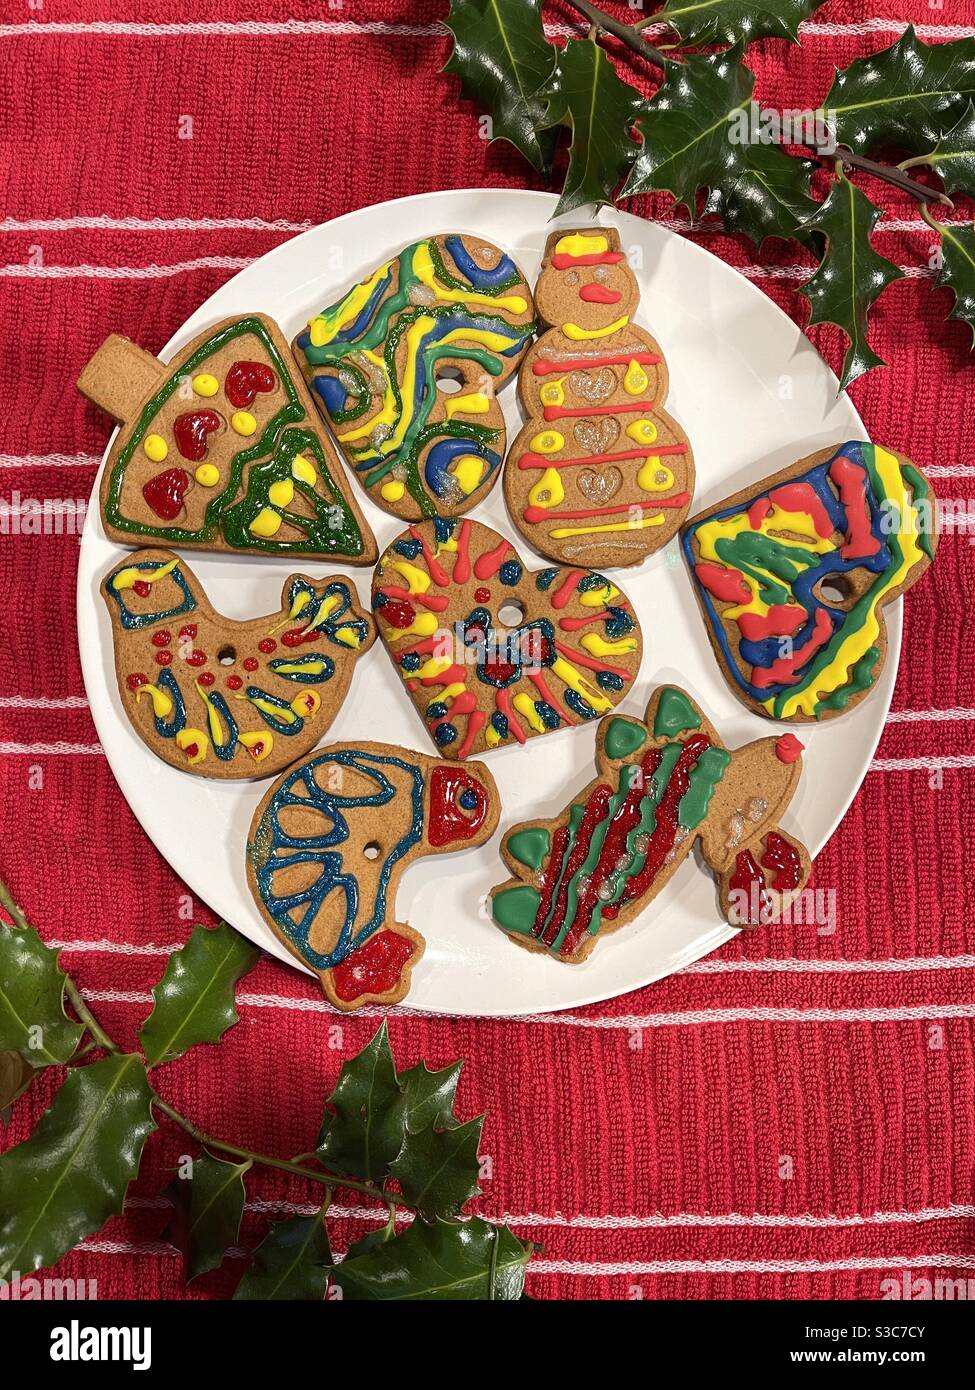 Biscuits de pain d'épice décorés pour Noël Banque D'Images